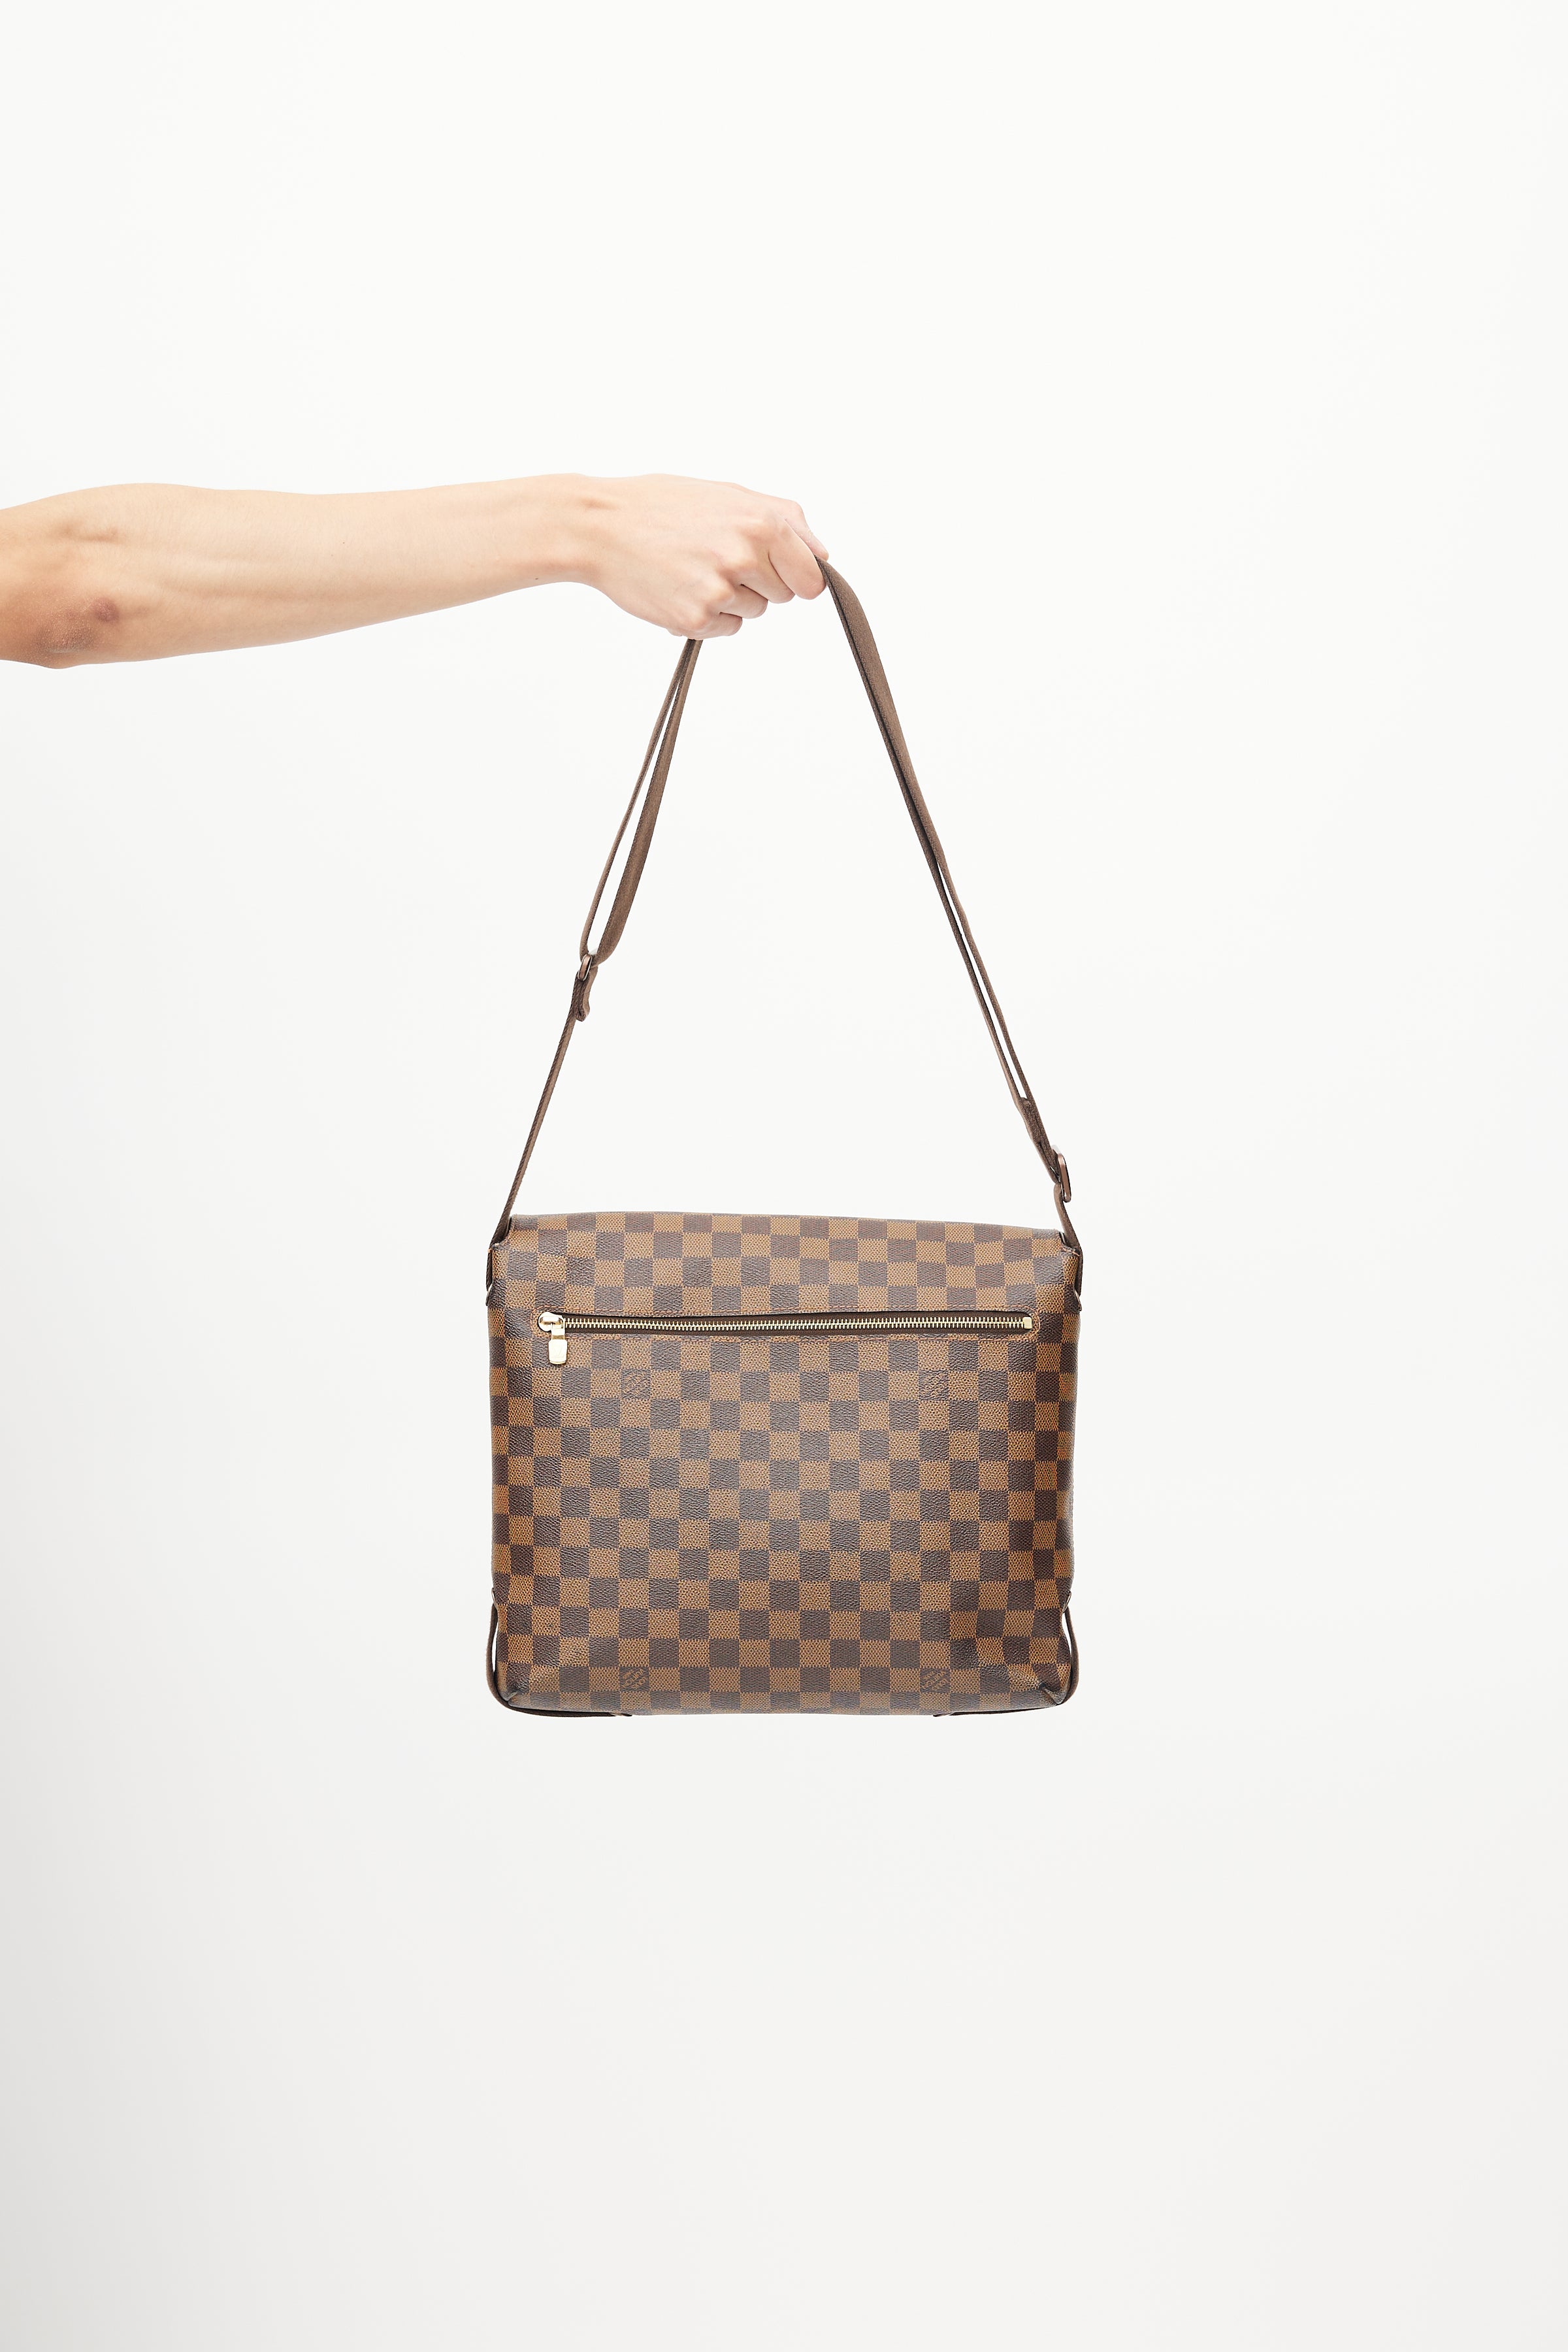 Louis Vuitton, Bags, Authentic Louis Vuitton Damier Brooklyn Gm Messenger